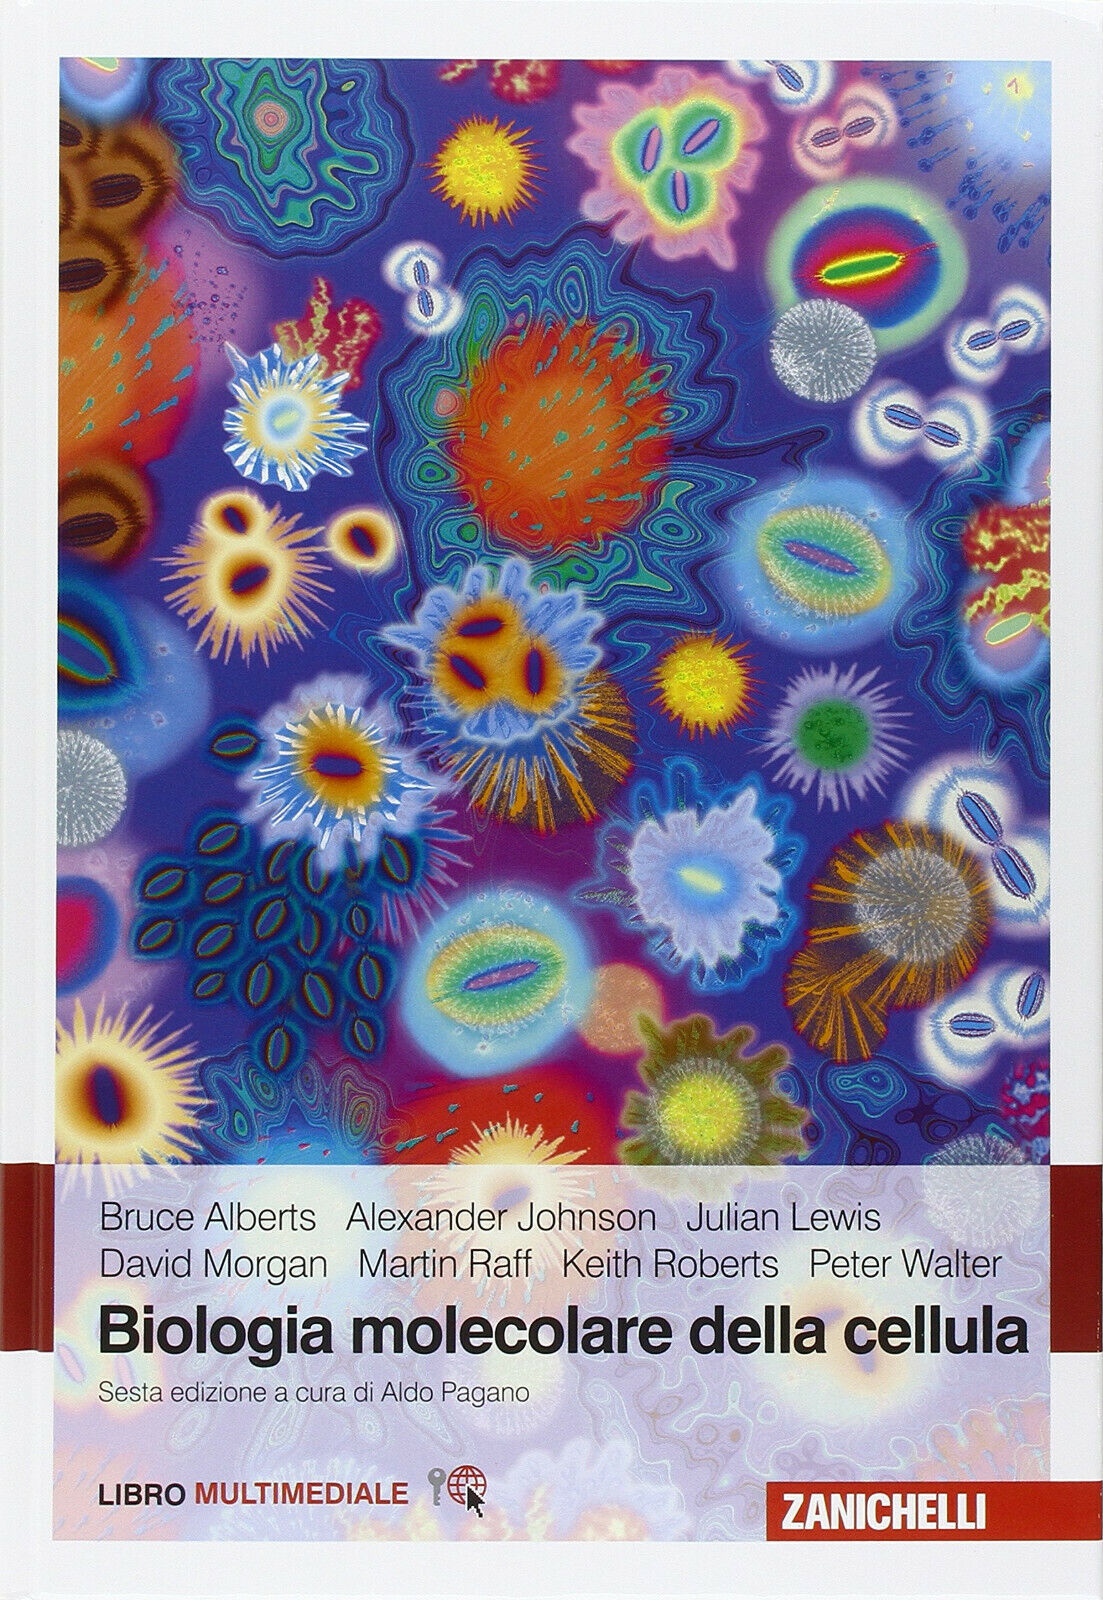 Biologia molecolare della cellula - Bruce Alberts - Zanichelli, 2016